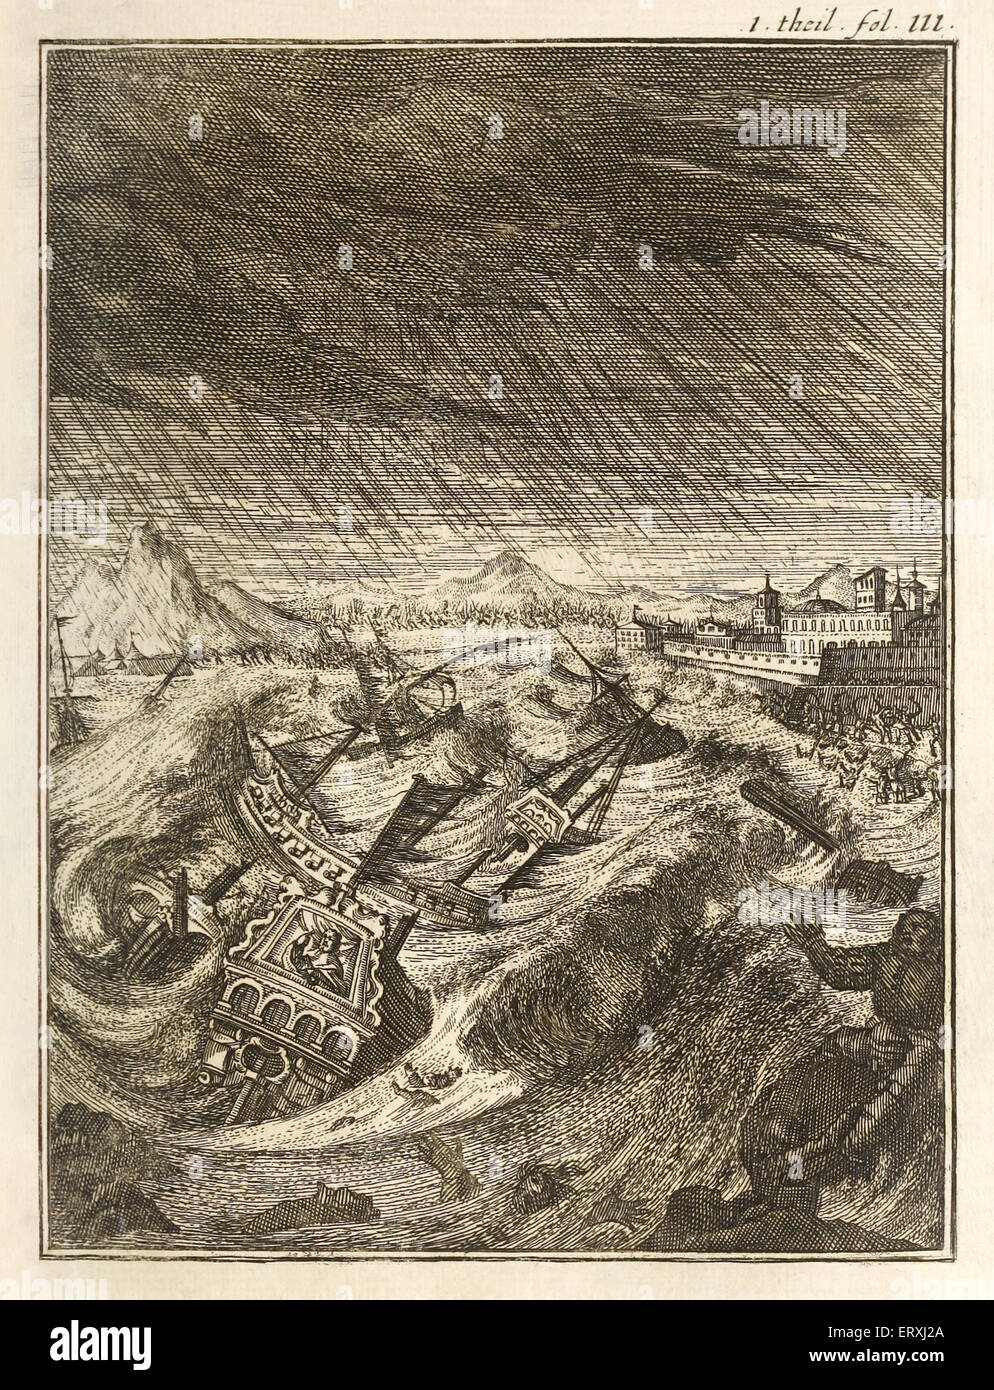 Andrea Doria, Sturm Andrea Doria, Sturm, Kupferstich von Herman Padtbrugge (1656-1687). Siehe Beschreibung für mehr Informationen. Stockfoto